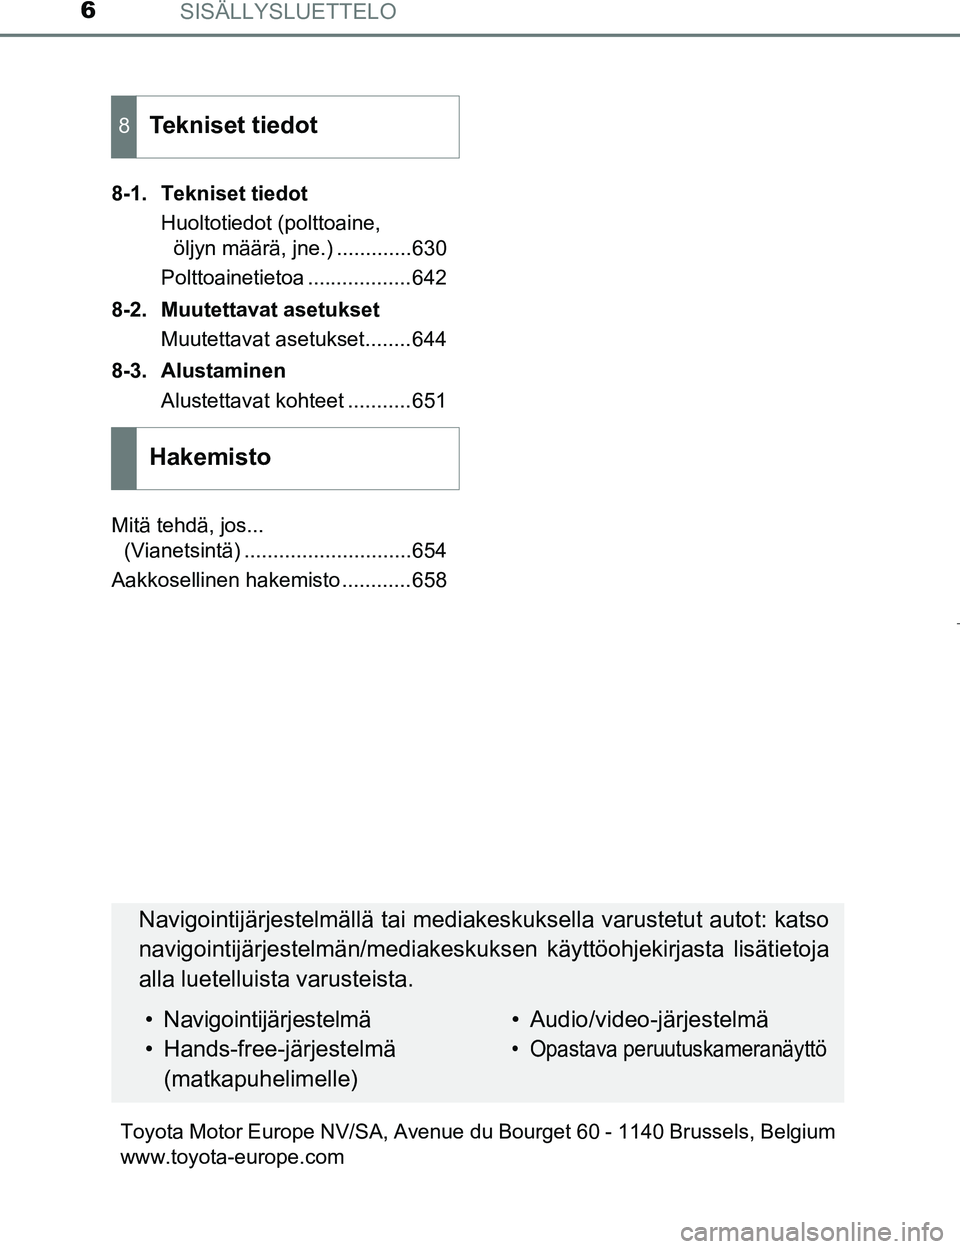 TOYOTA PRIUS 2017  Omistajan Käsikirja (in Finnish) SISÄLLYSLUETTELO6
OM47B56FI8-1. Tekniset tiedot
Huoltotiedot (polttoaine, öljyn määrä, jne.) .............630
Polttoainetietoa ..................642
8-2. Muutettavat asetukset Muutettavat asetuks